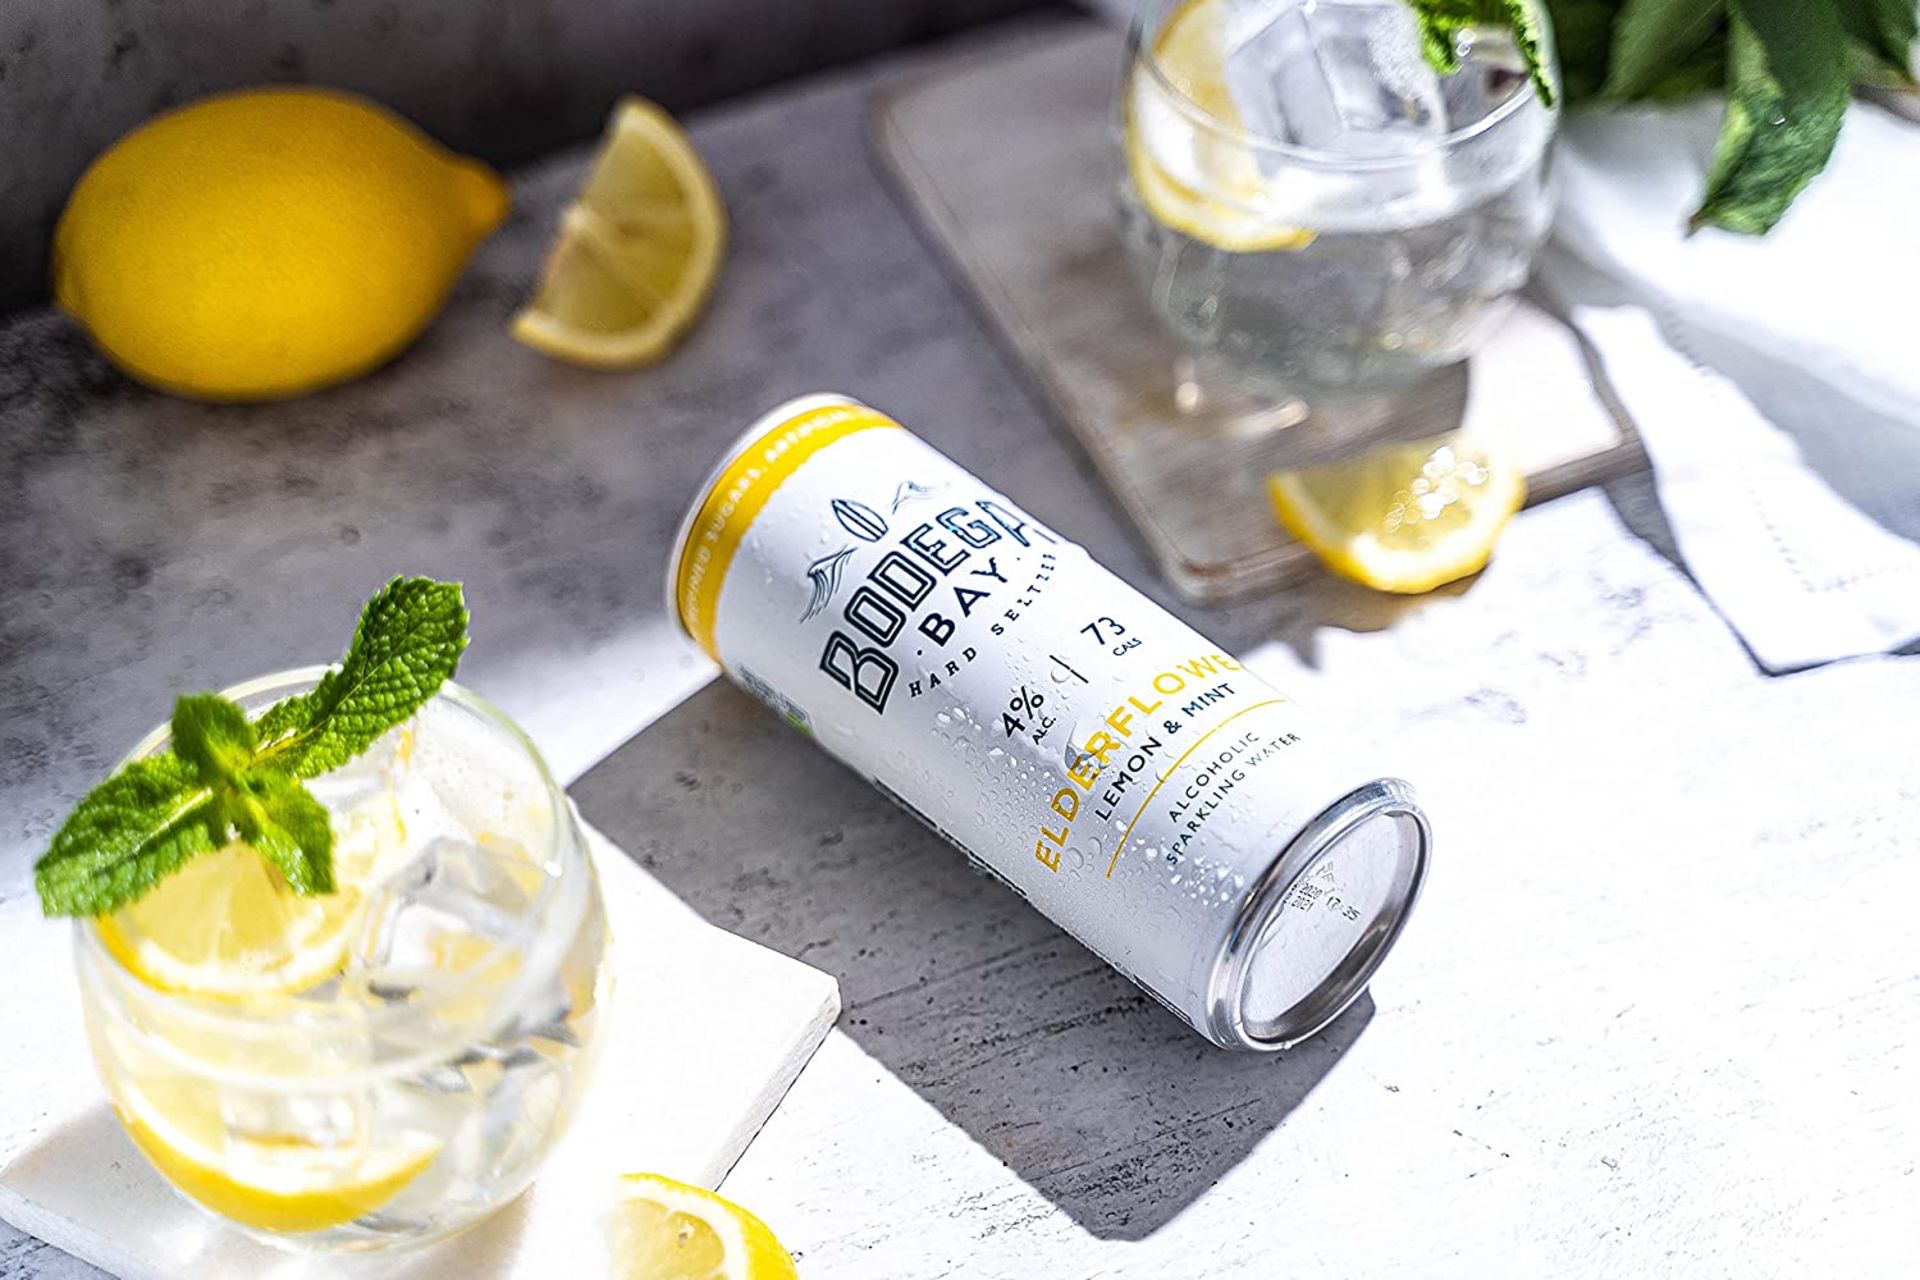 24 x Bodega Bay Hard Seltzer 250ml Alcoholic Sparkling Water Drinks - Elderflower Lemon & Mint - - Image 5 of 9